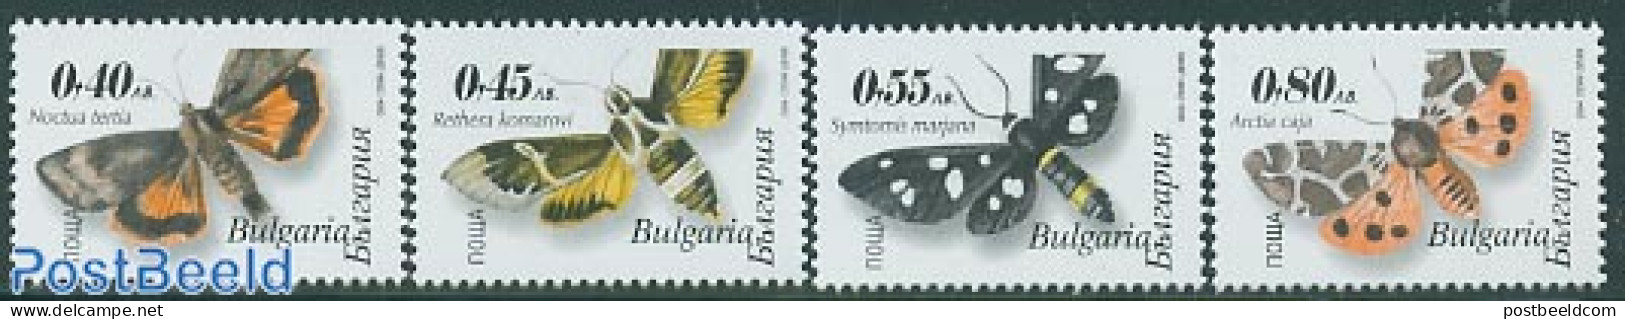 Bulgaria 2004 Butterflies 4v, Normal Perforation, Mint NH, Nature - Butterflies - Ongebruikt